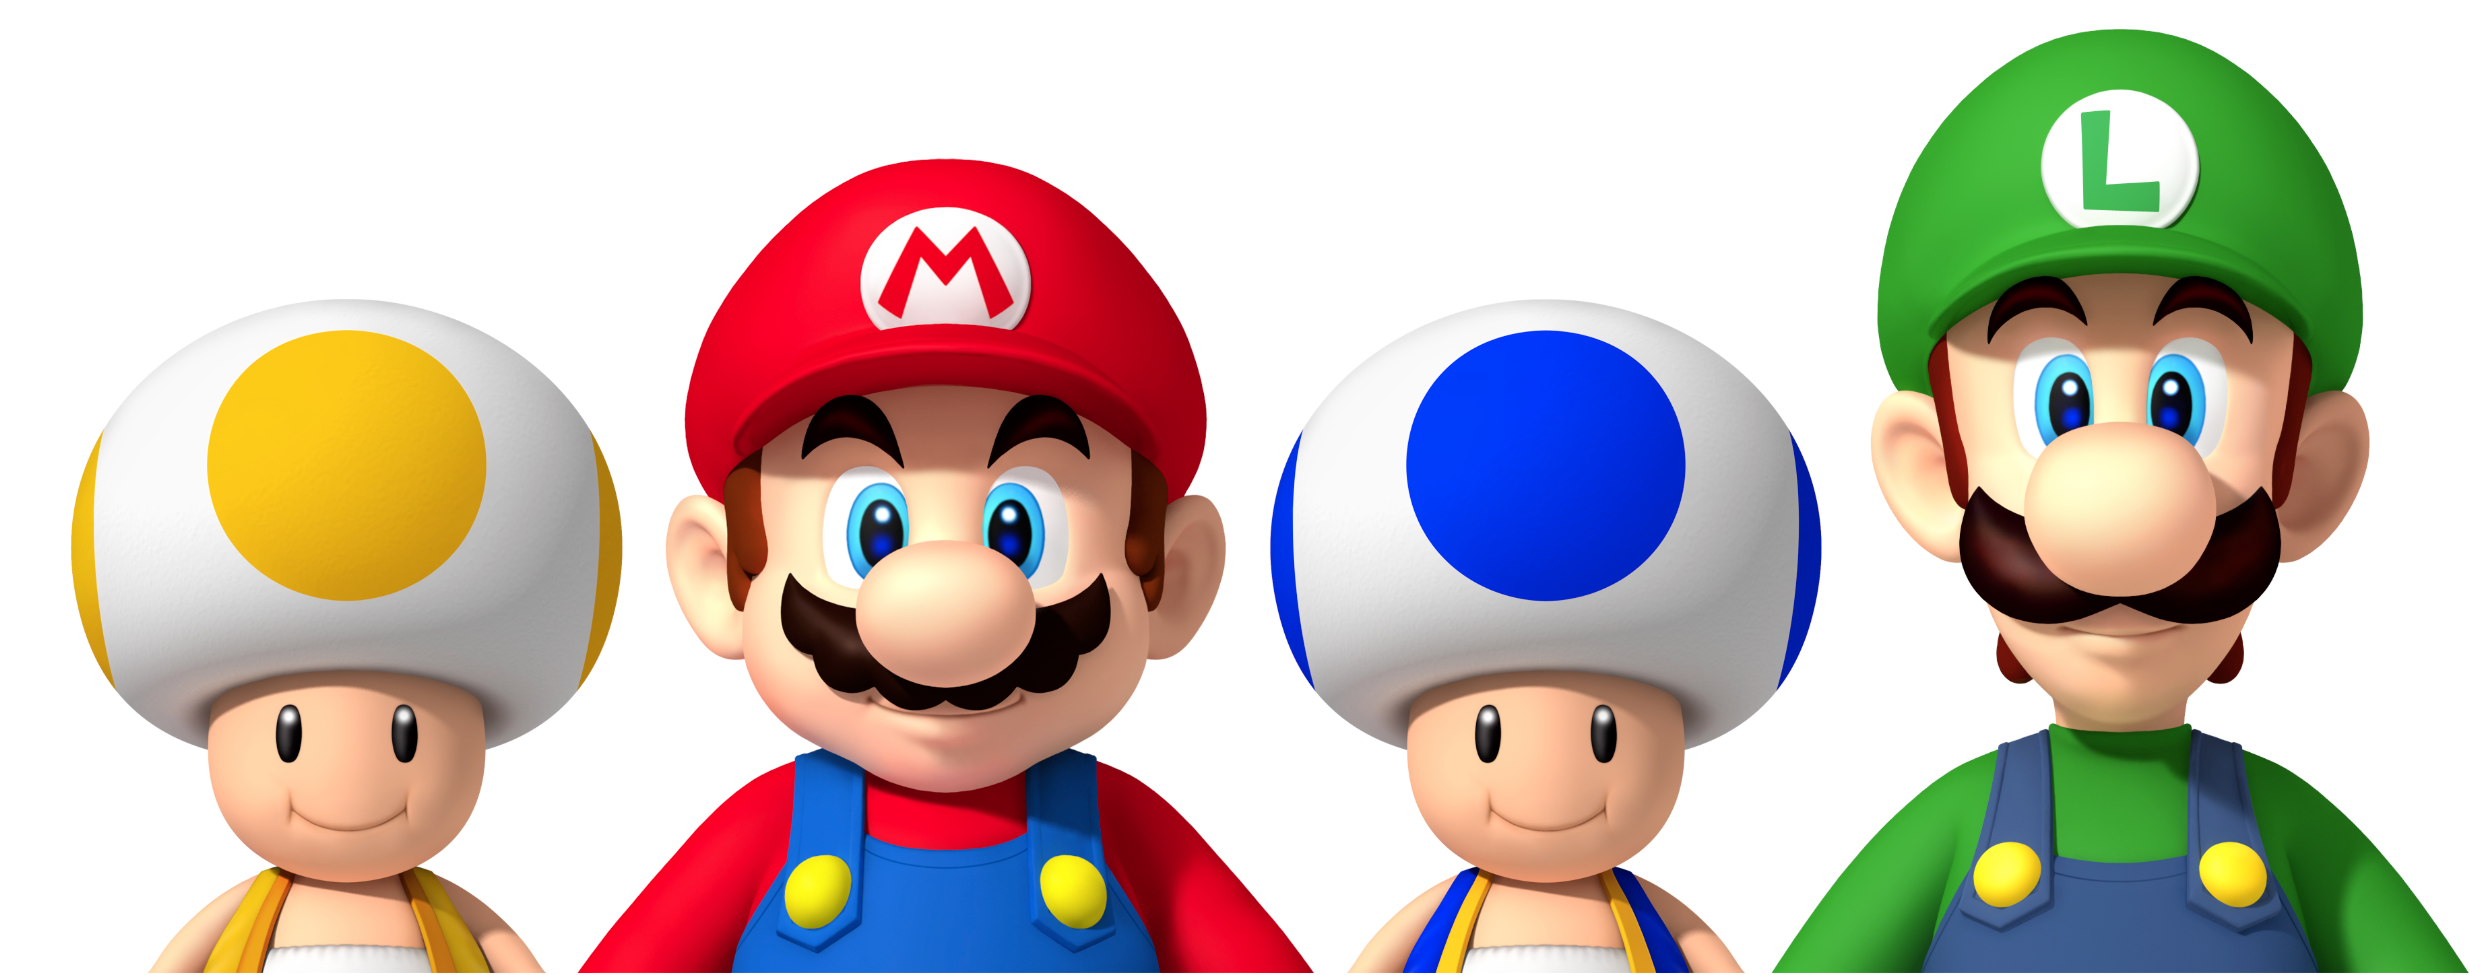 Super Mario Bros. get a new 2013 look